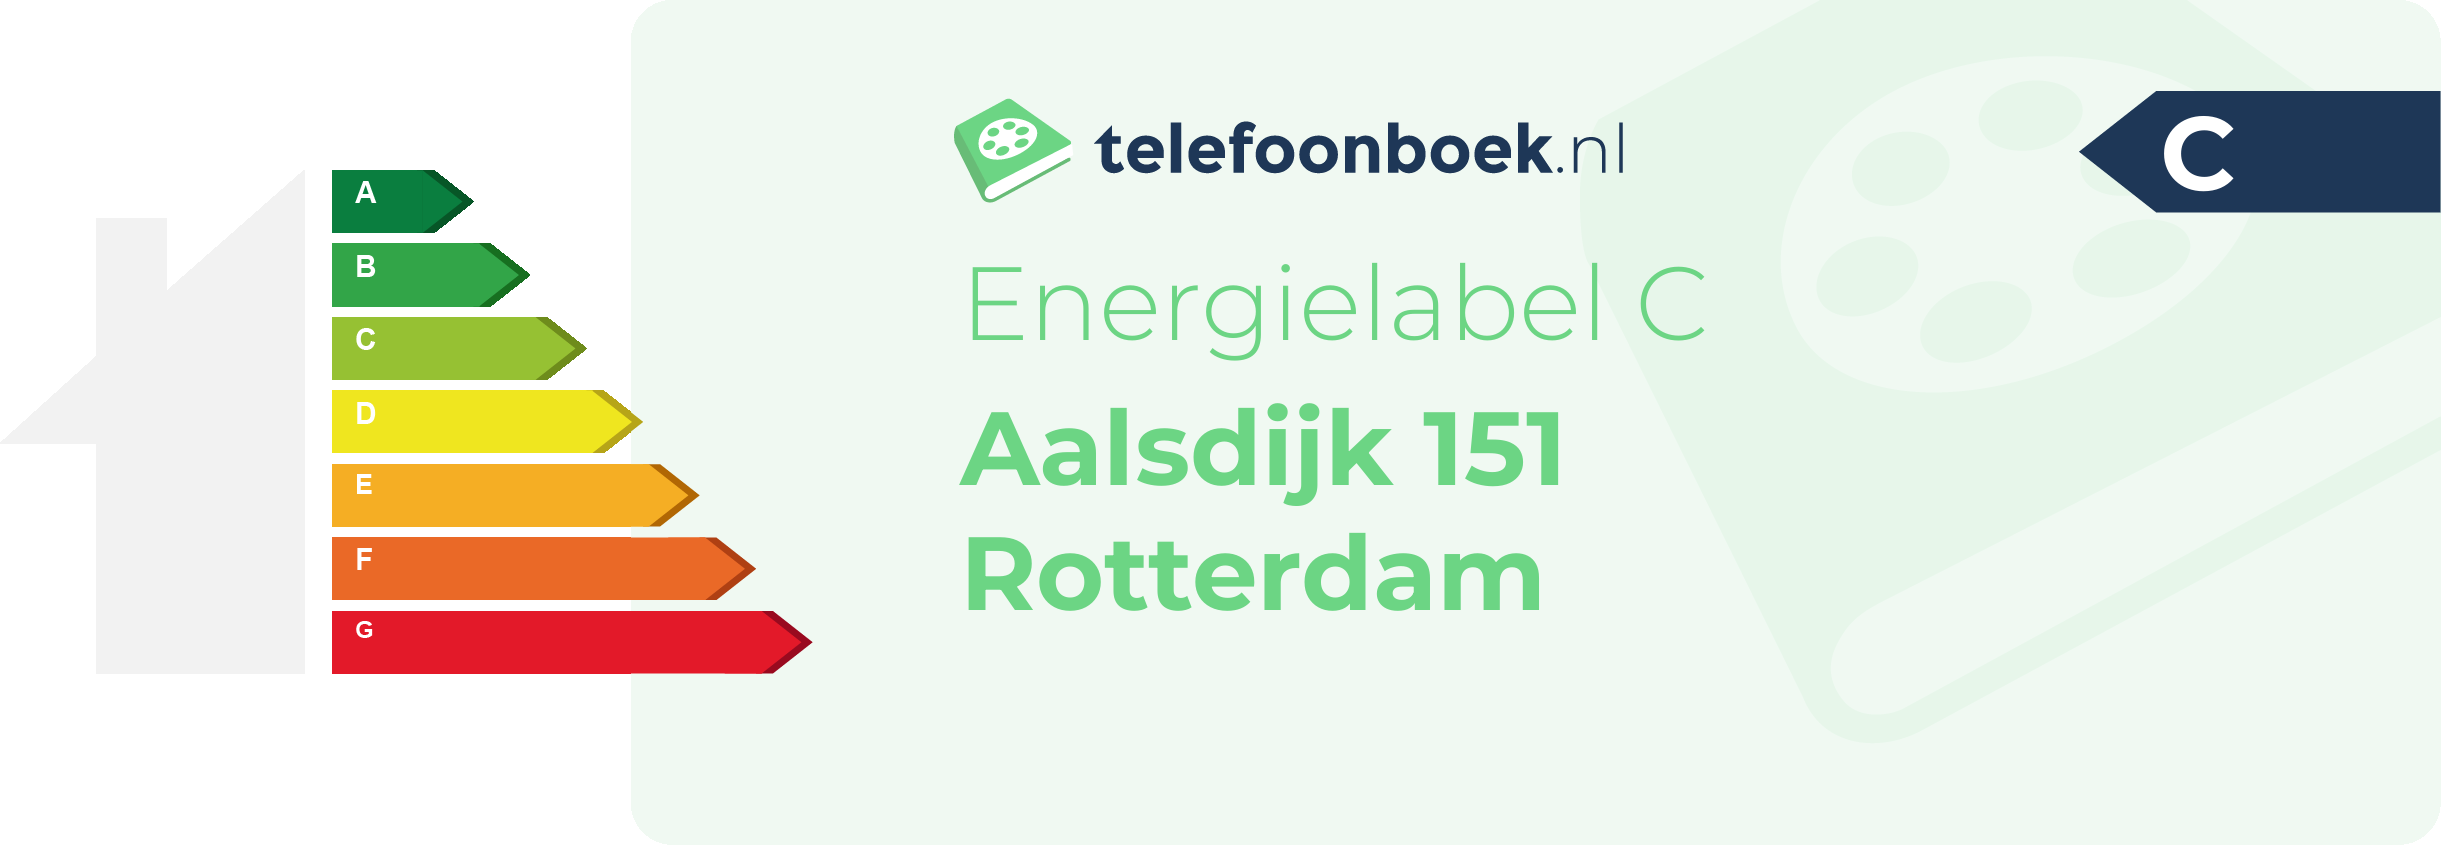 Energielabel Aalsdijk 151 Rotterdam